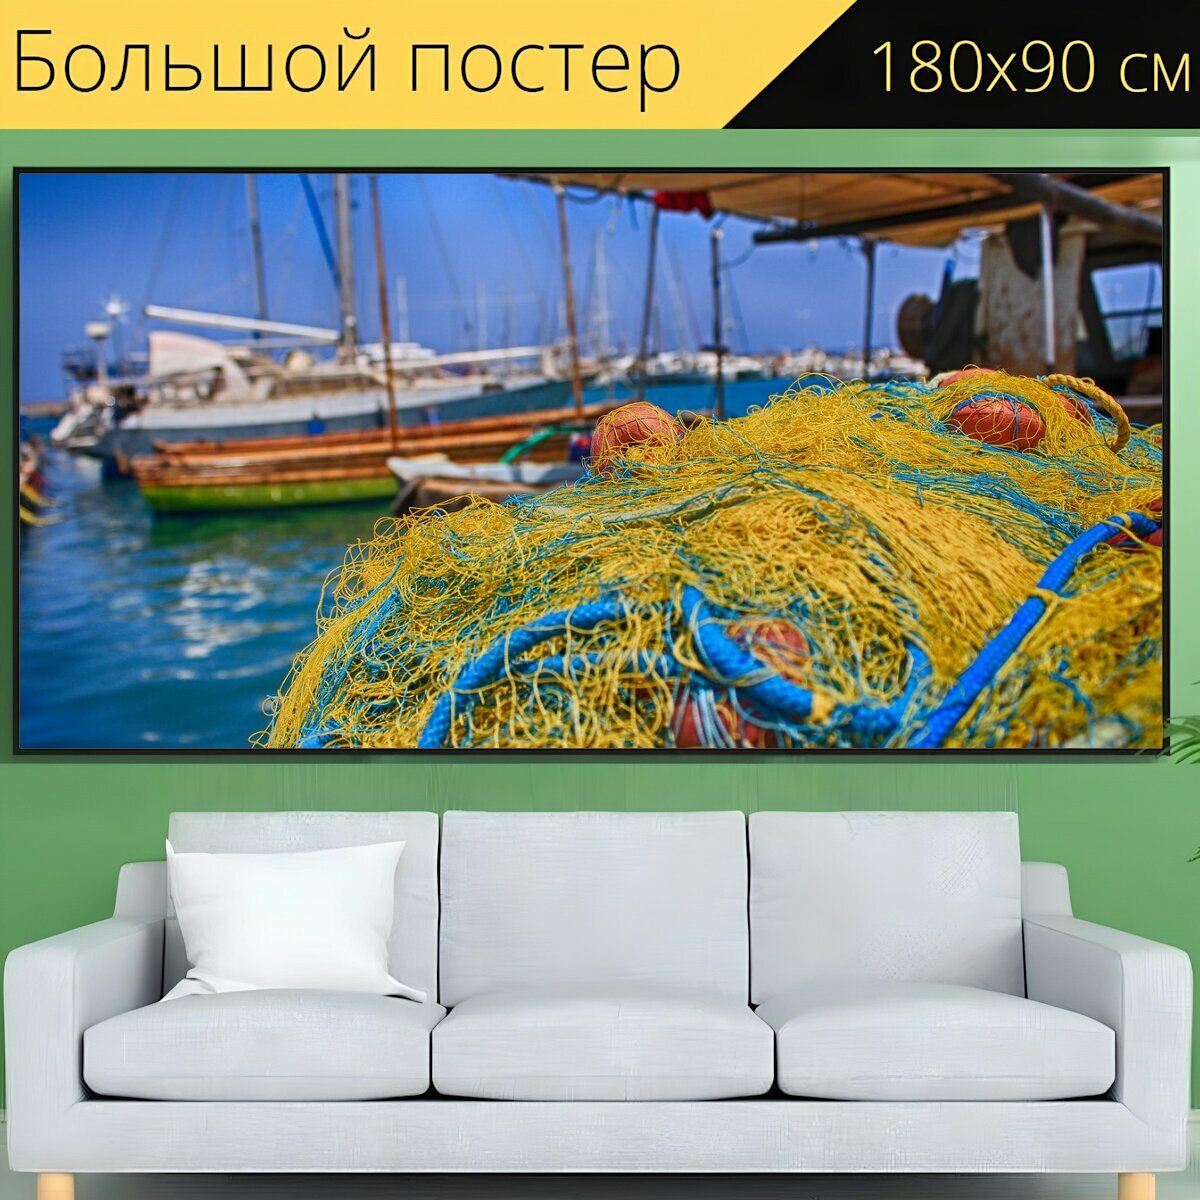 Большой постер "Рыболовная сеть, порт, синий" 180 x 90 см. для интерьера